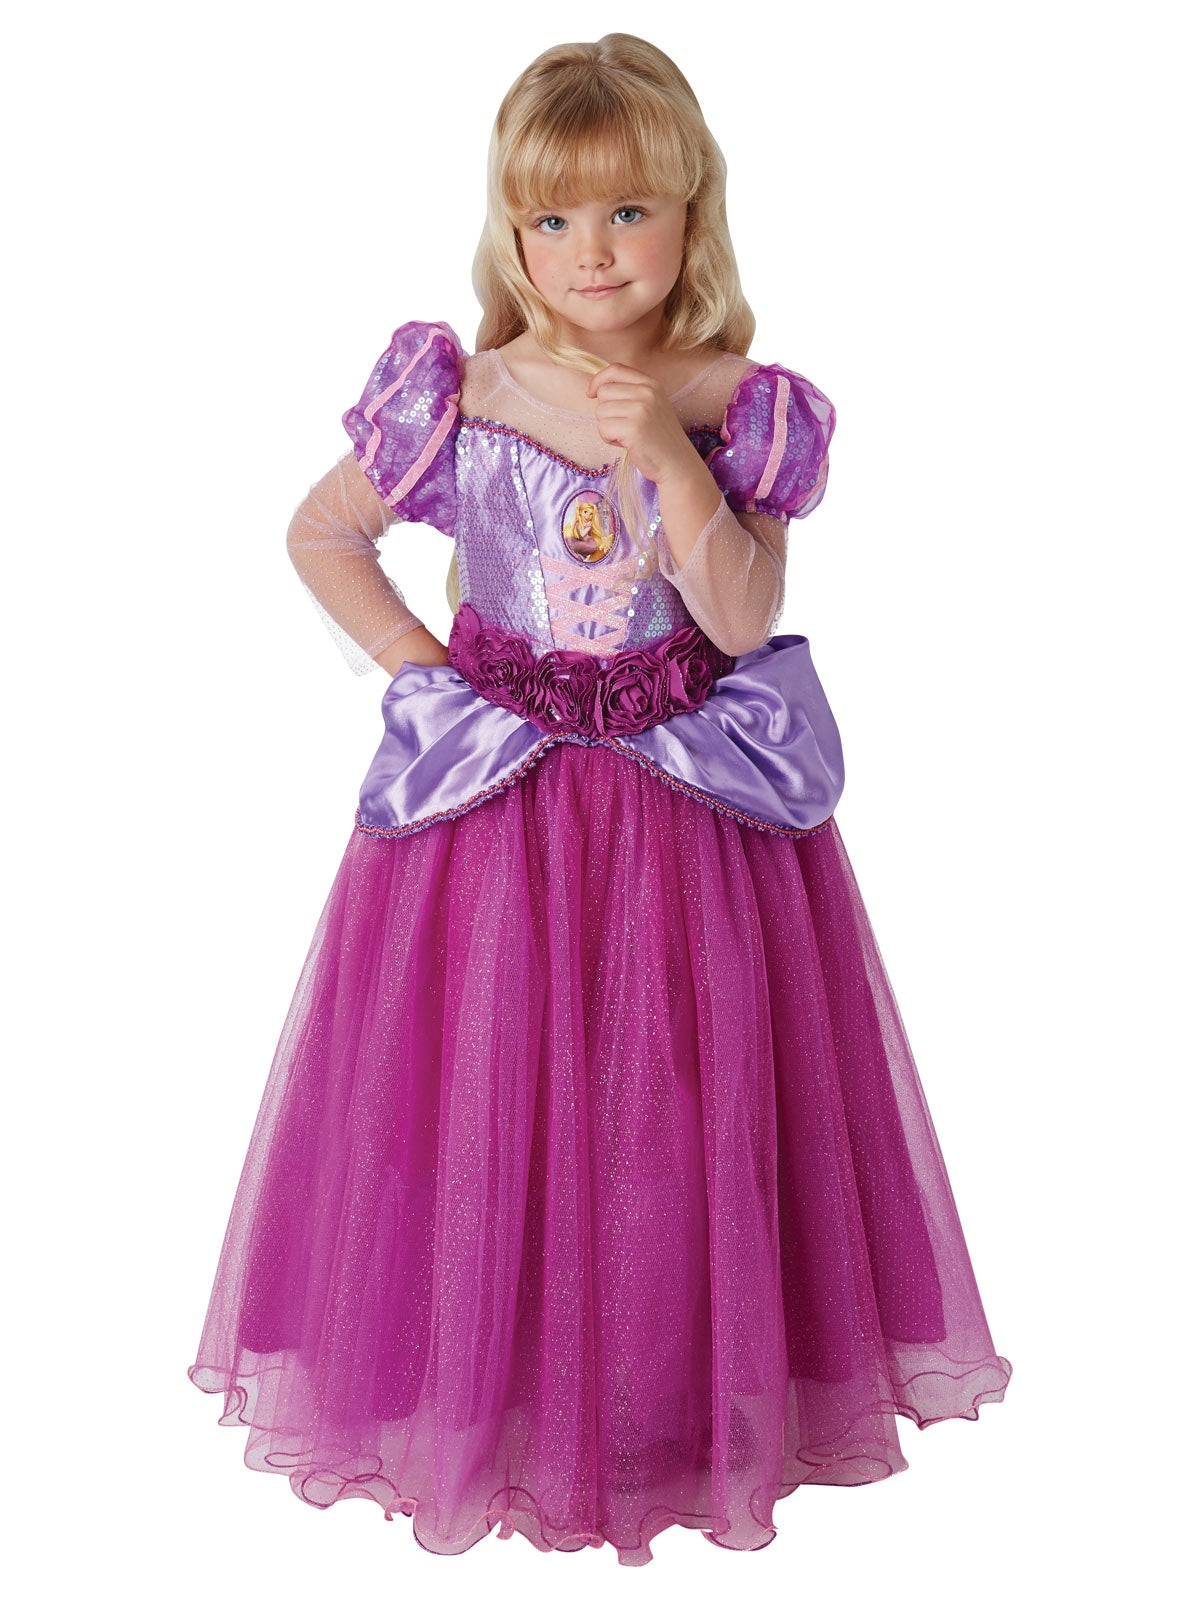 Disney Princess Rapunzel Premium Costume - Ages 4-6